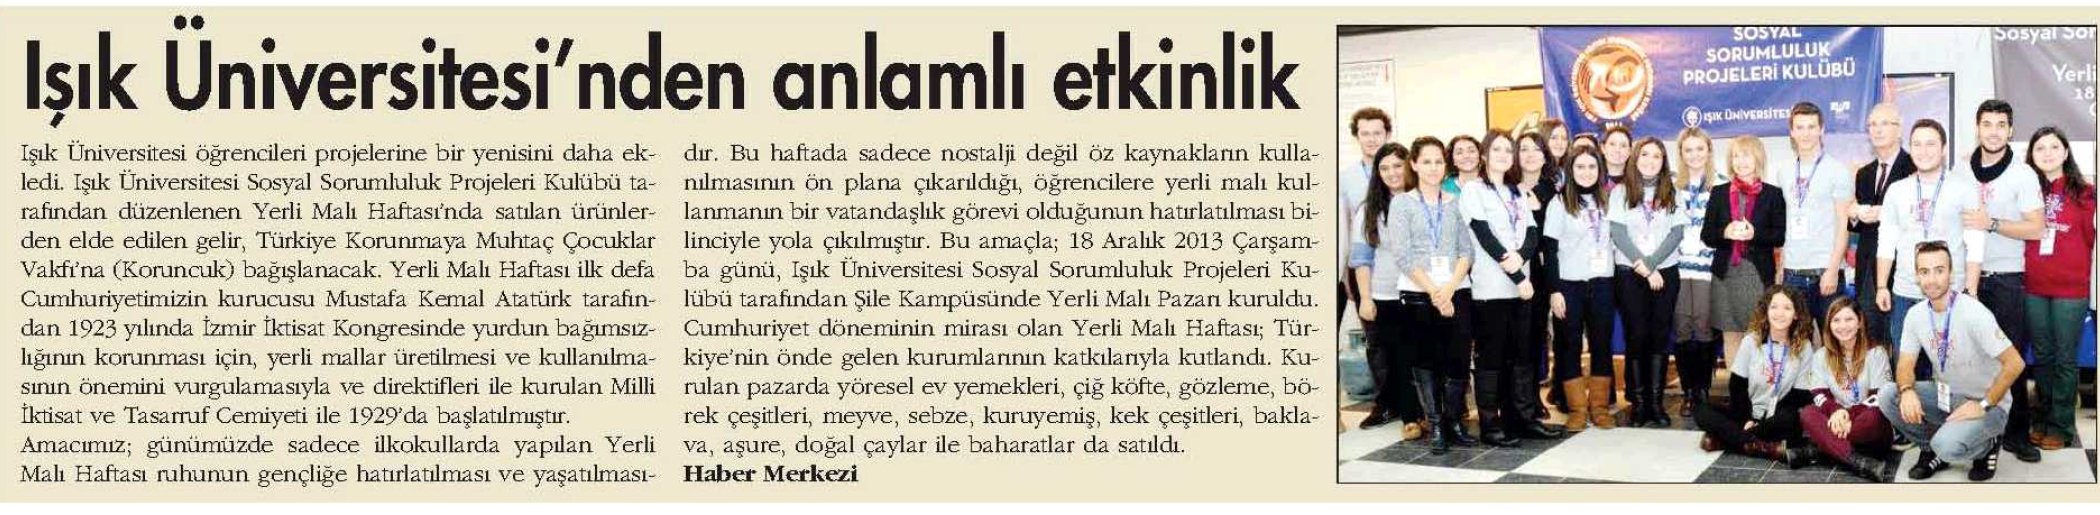 Antalya Gündem Gazetesi - 20.12.2013